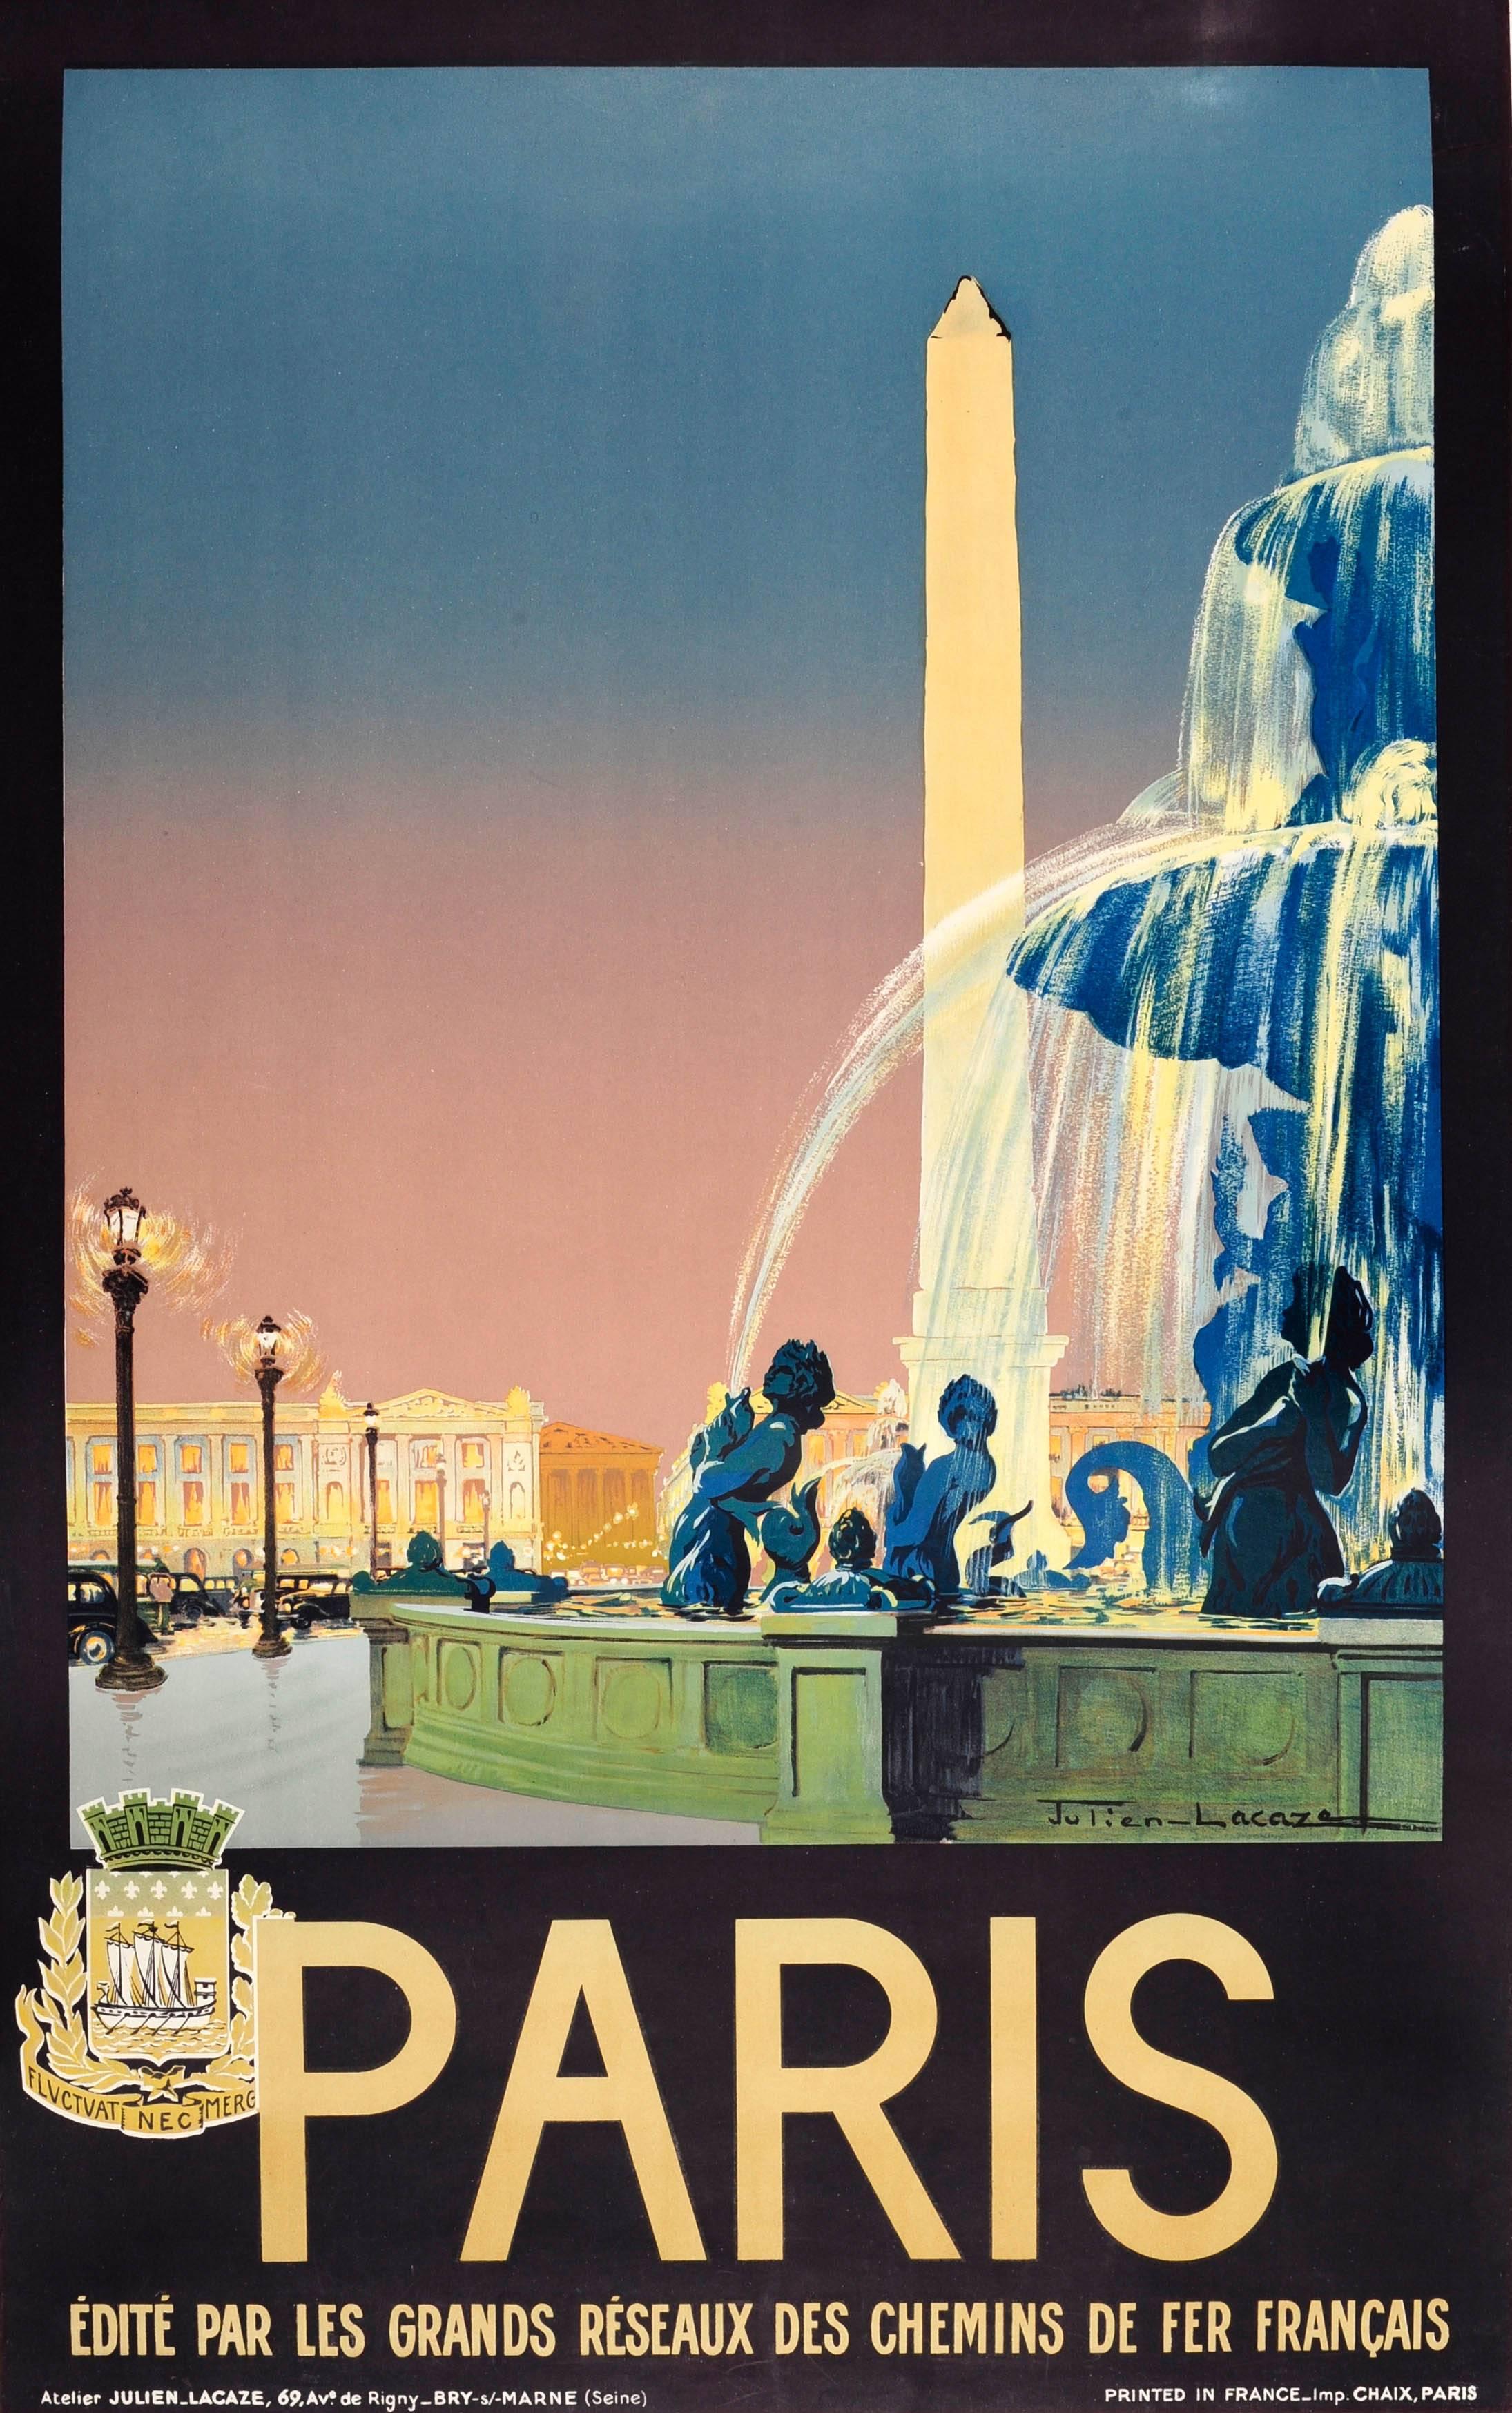 Julien Lacaze Print - Original Vintage Chemins De Fer French Railway Travel Advertising Poster - Paris